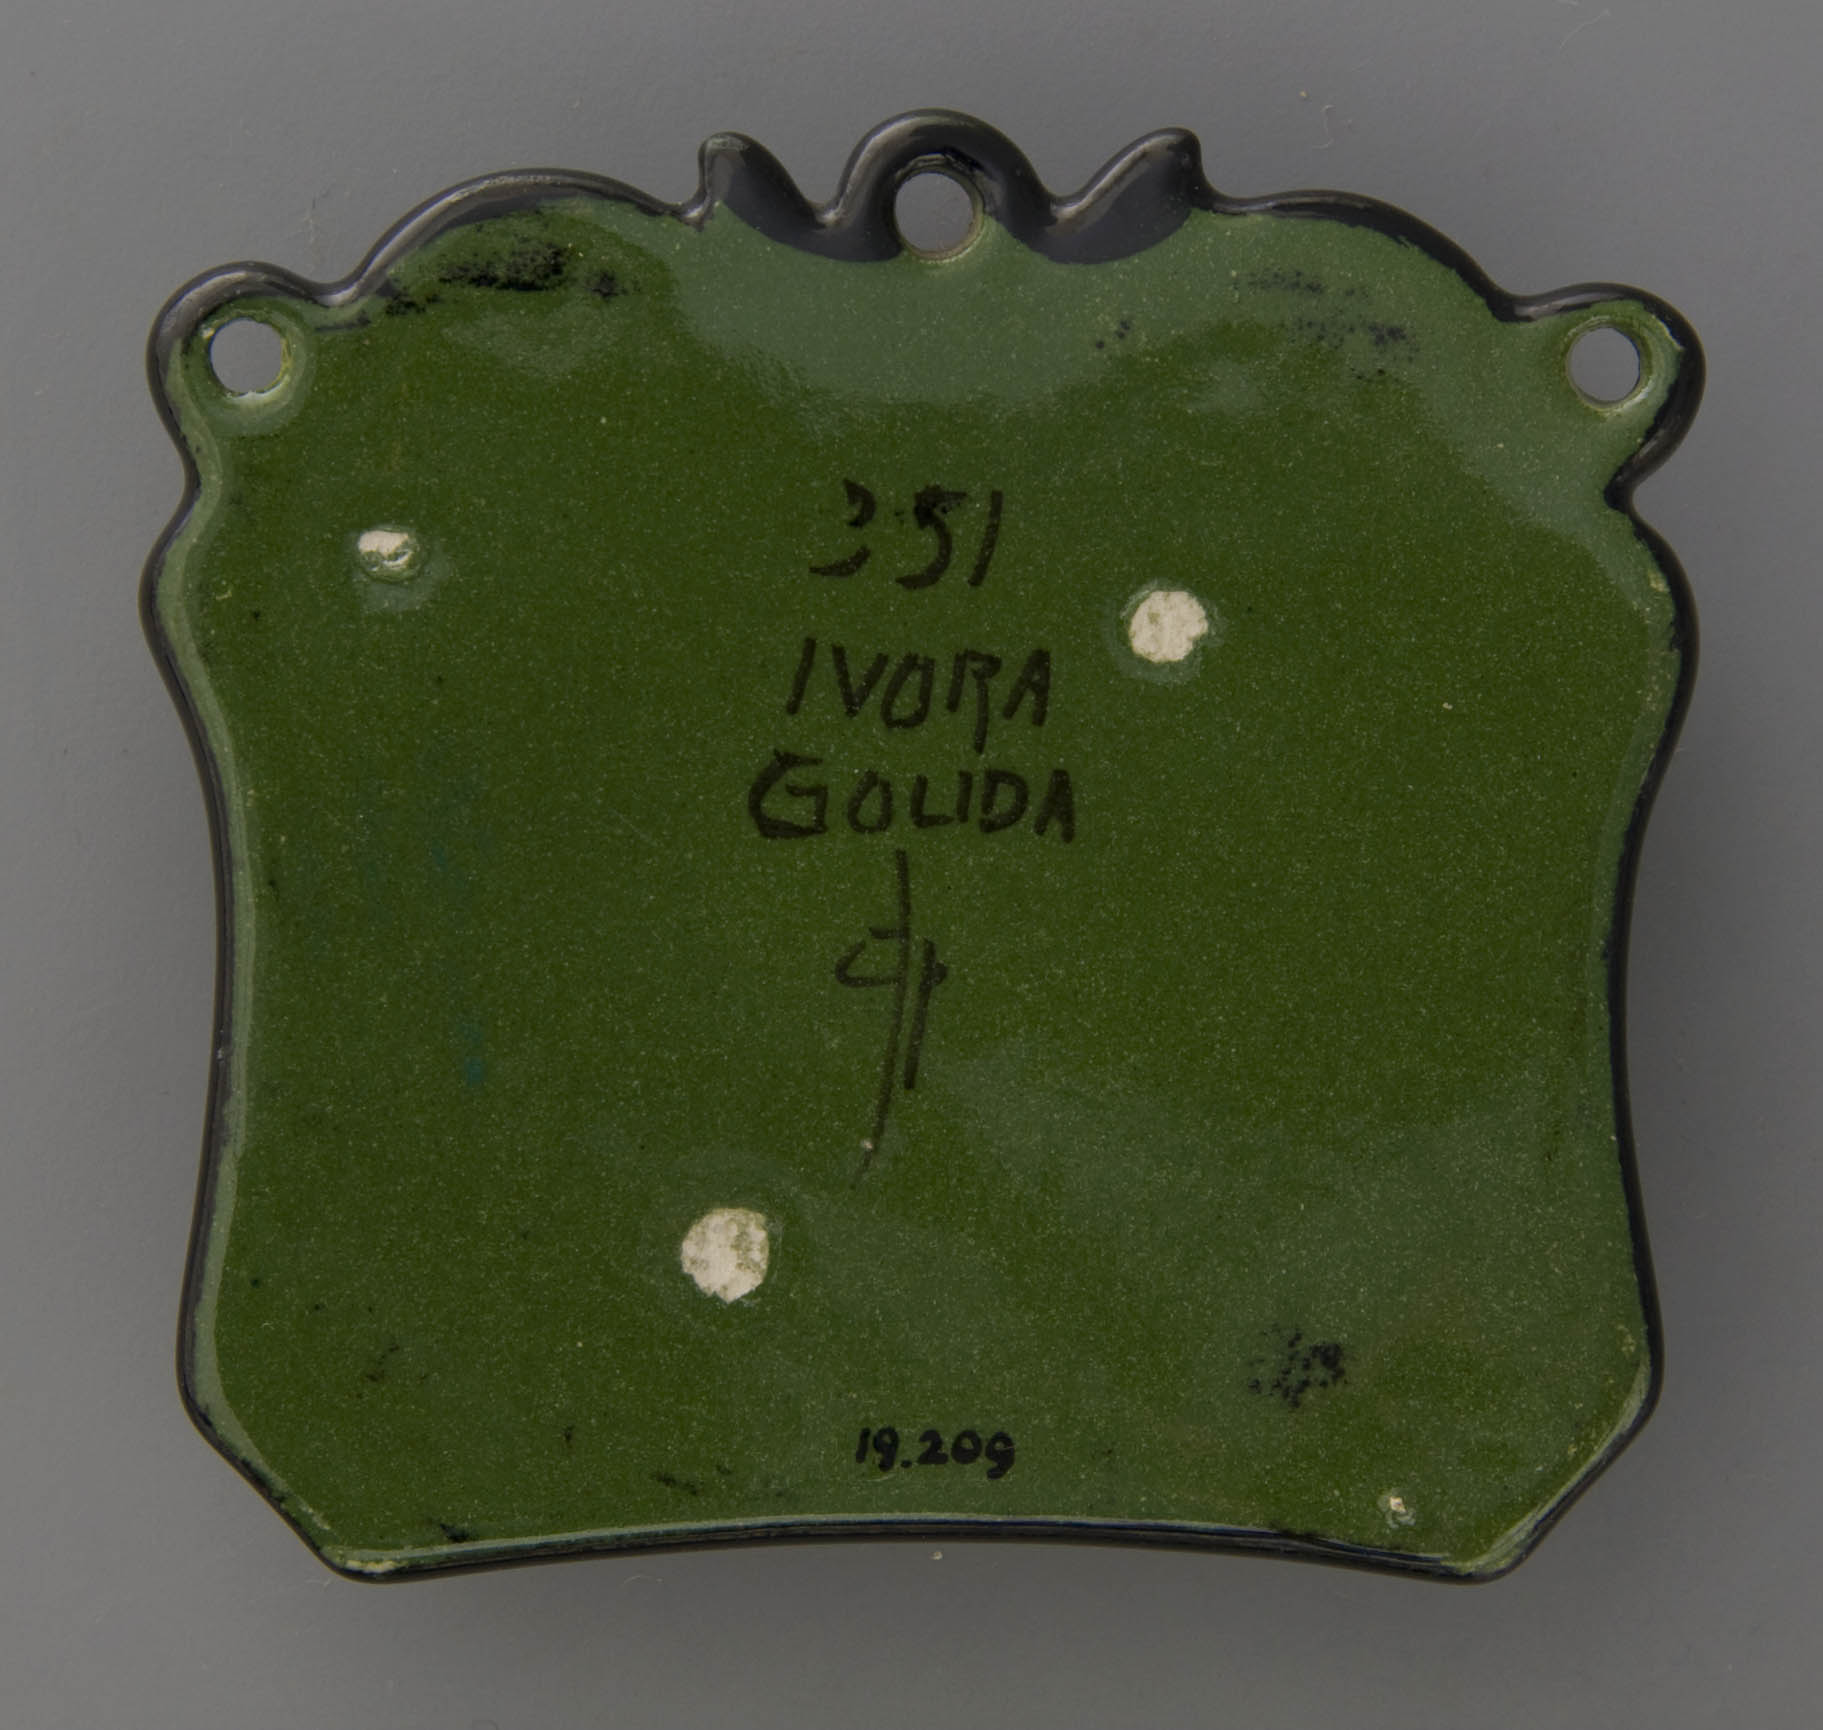 008-19.209-wandrekje-ivora-gouda-3